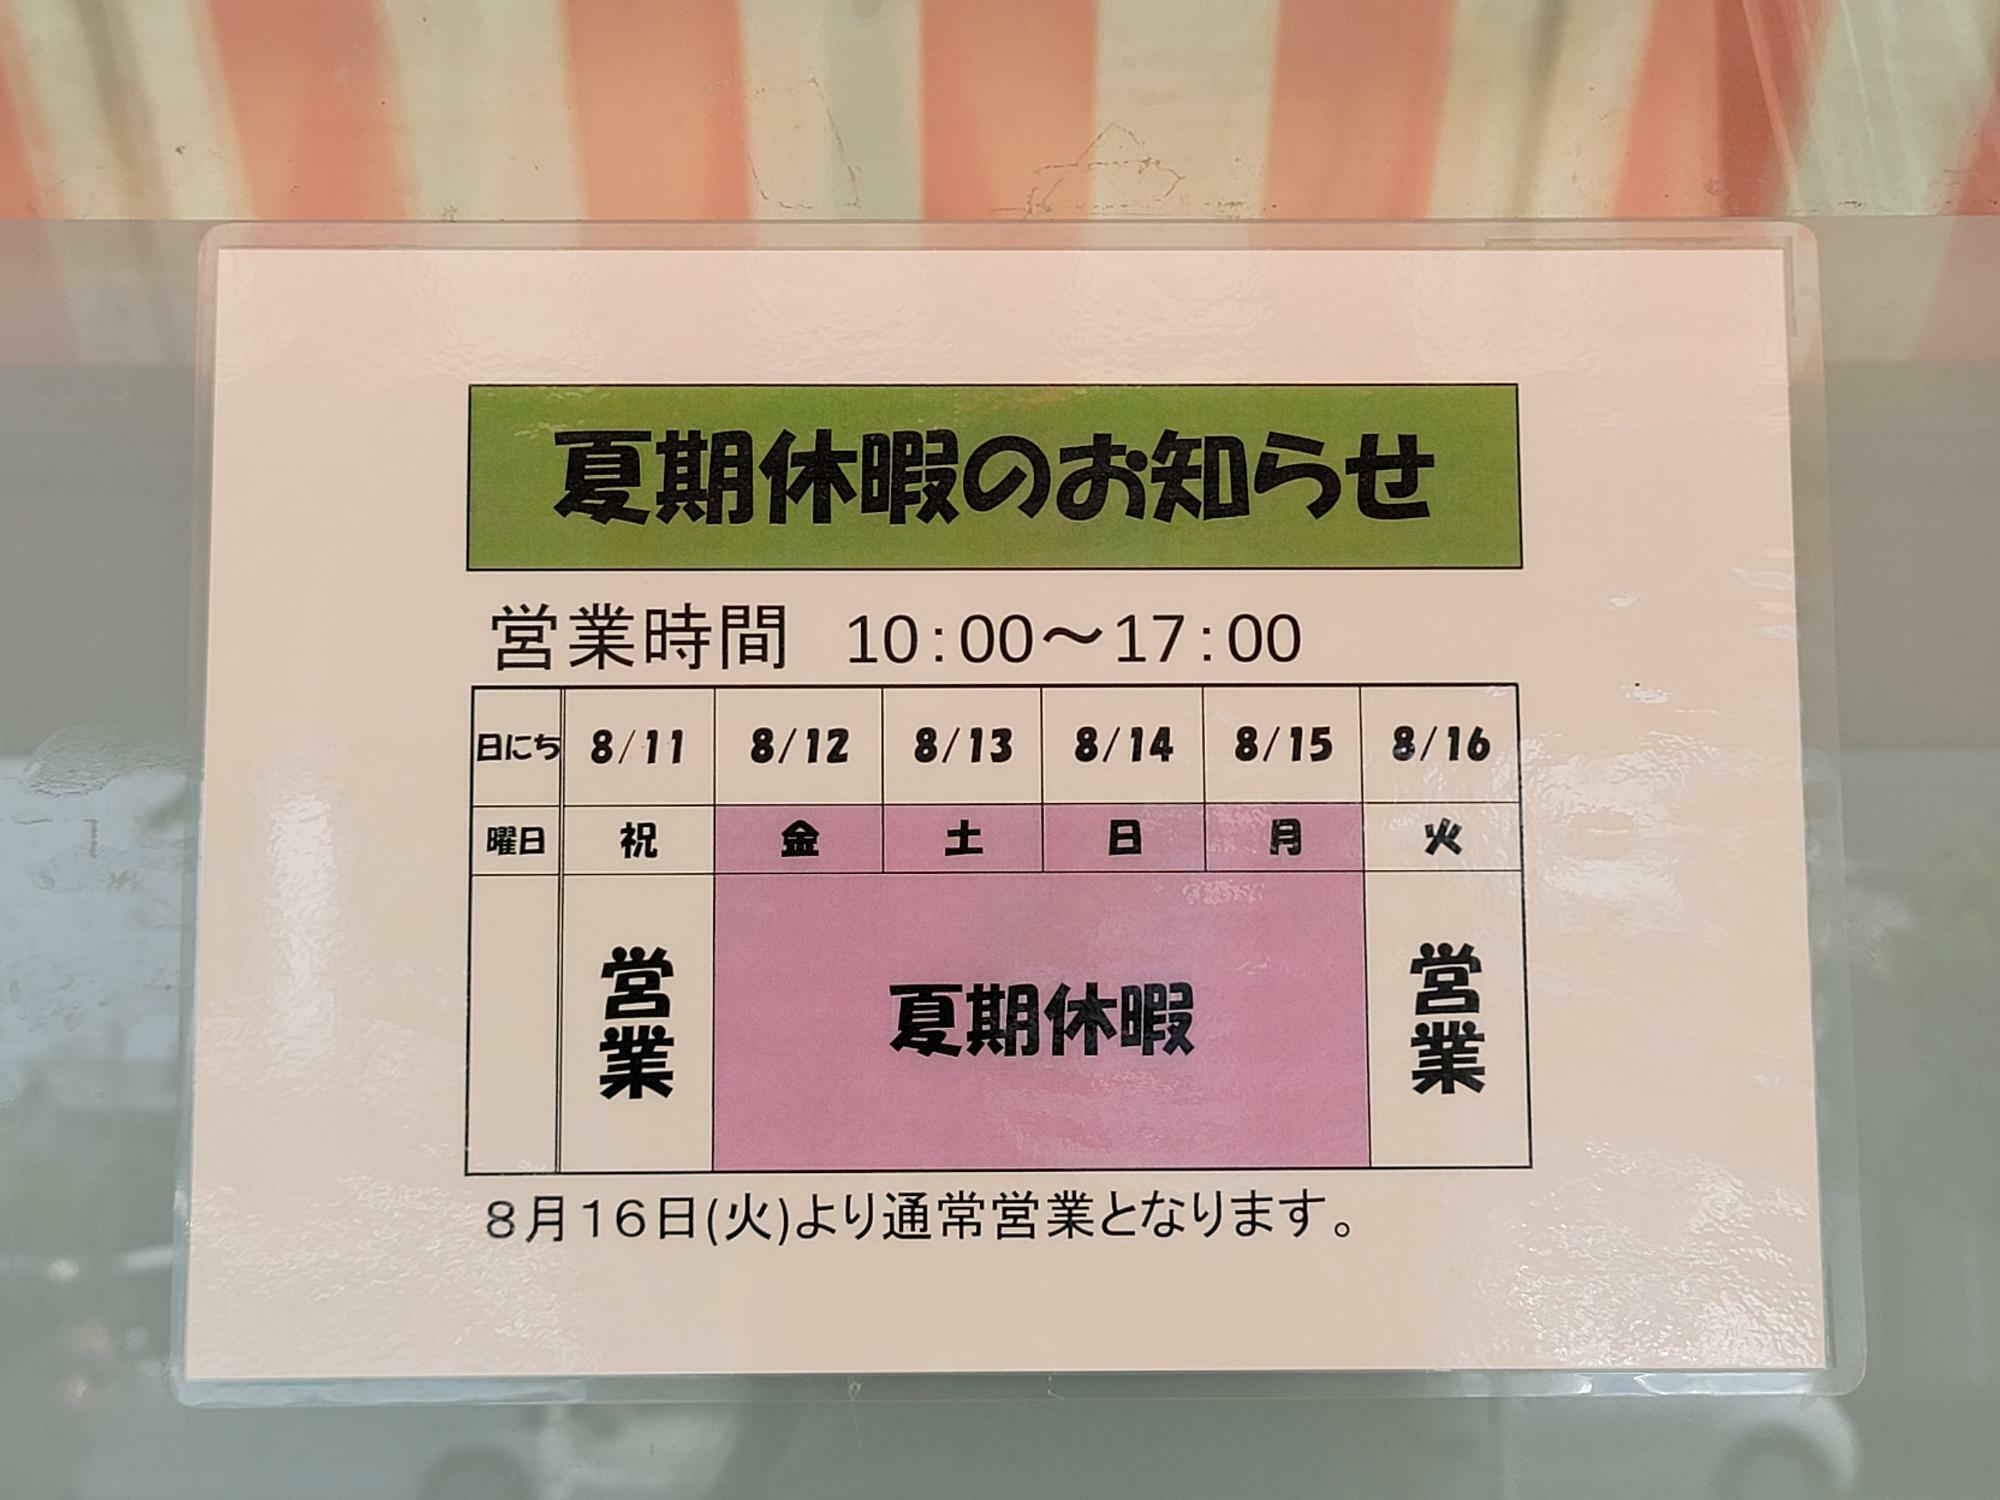 佐古蒲鉾店の「夏季休暇のお知らせ」。